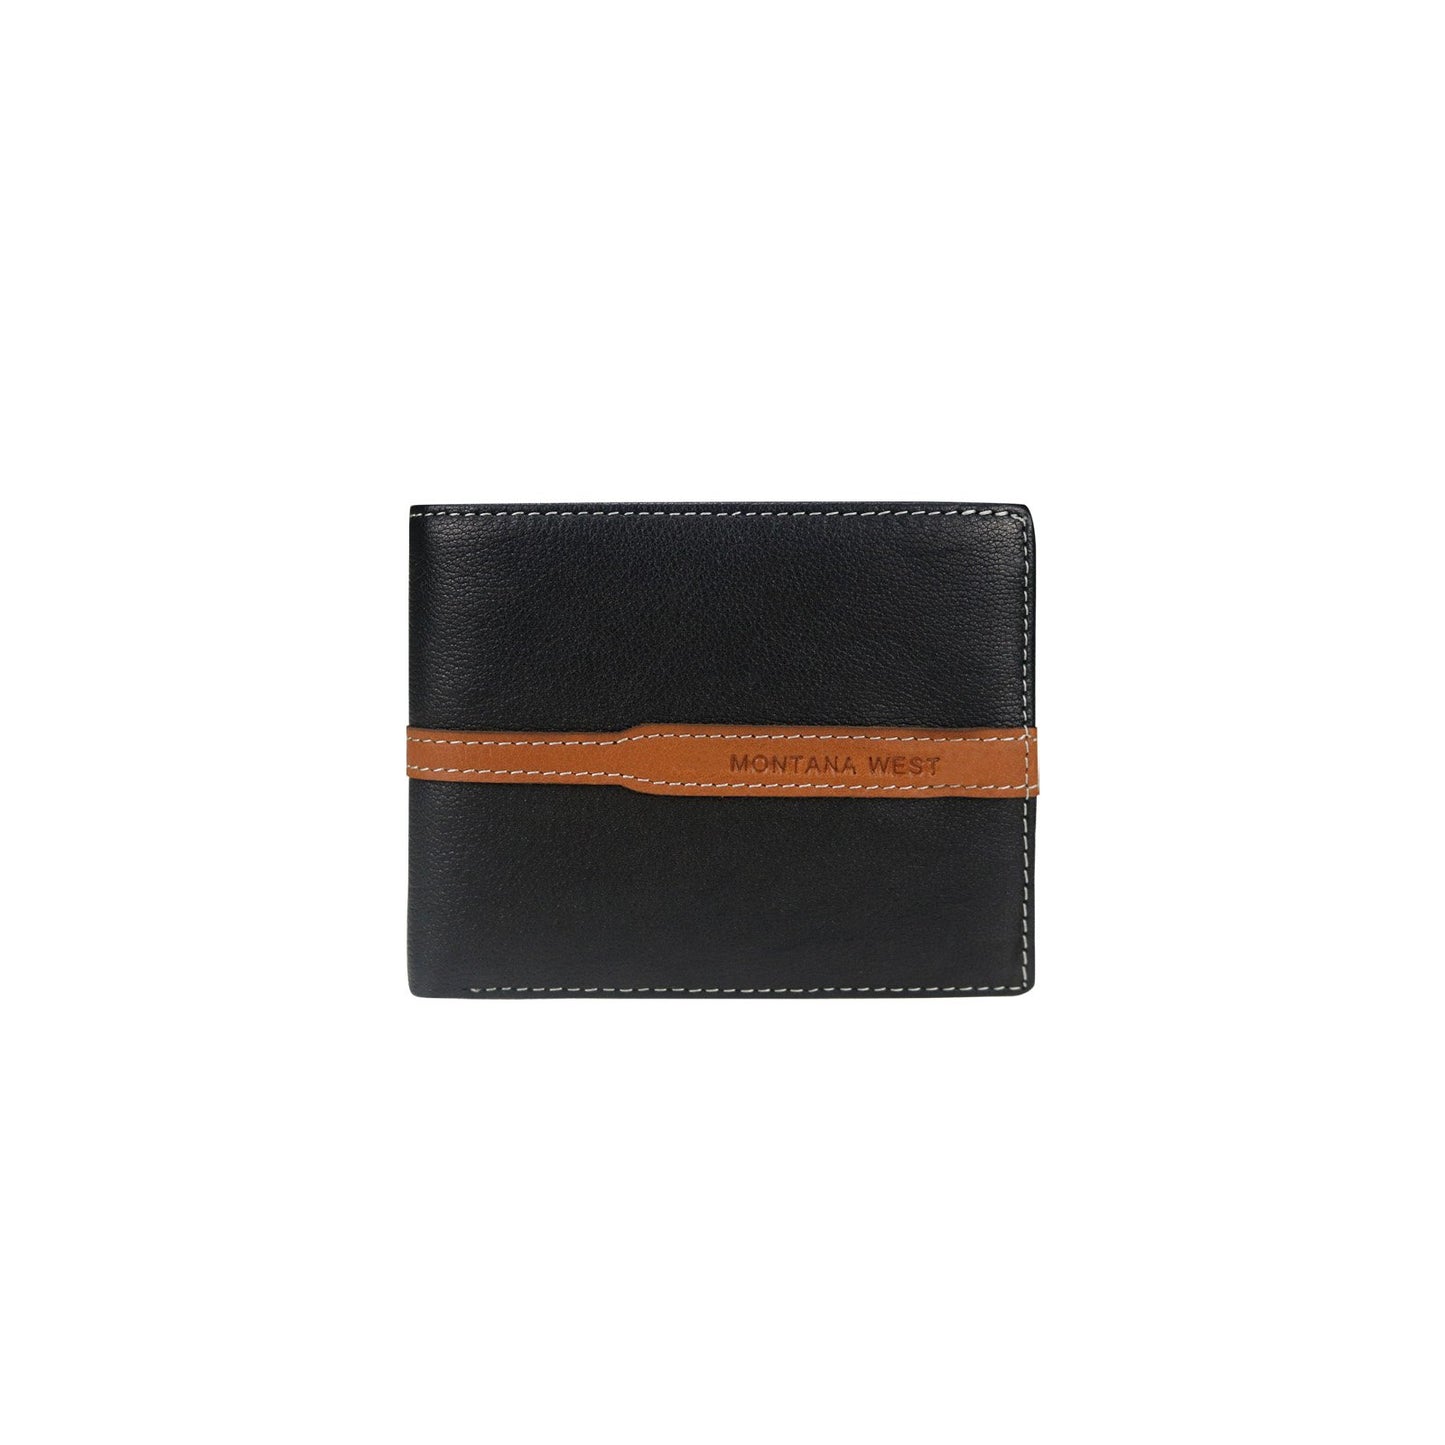 Genuine Leather Men's Wallet - Black/Brown